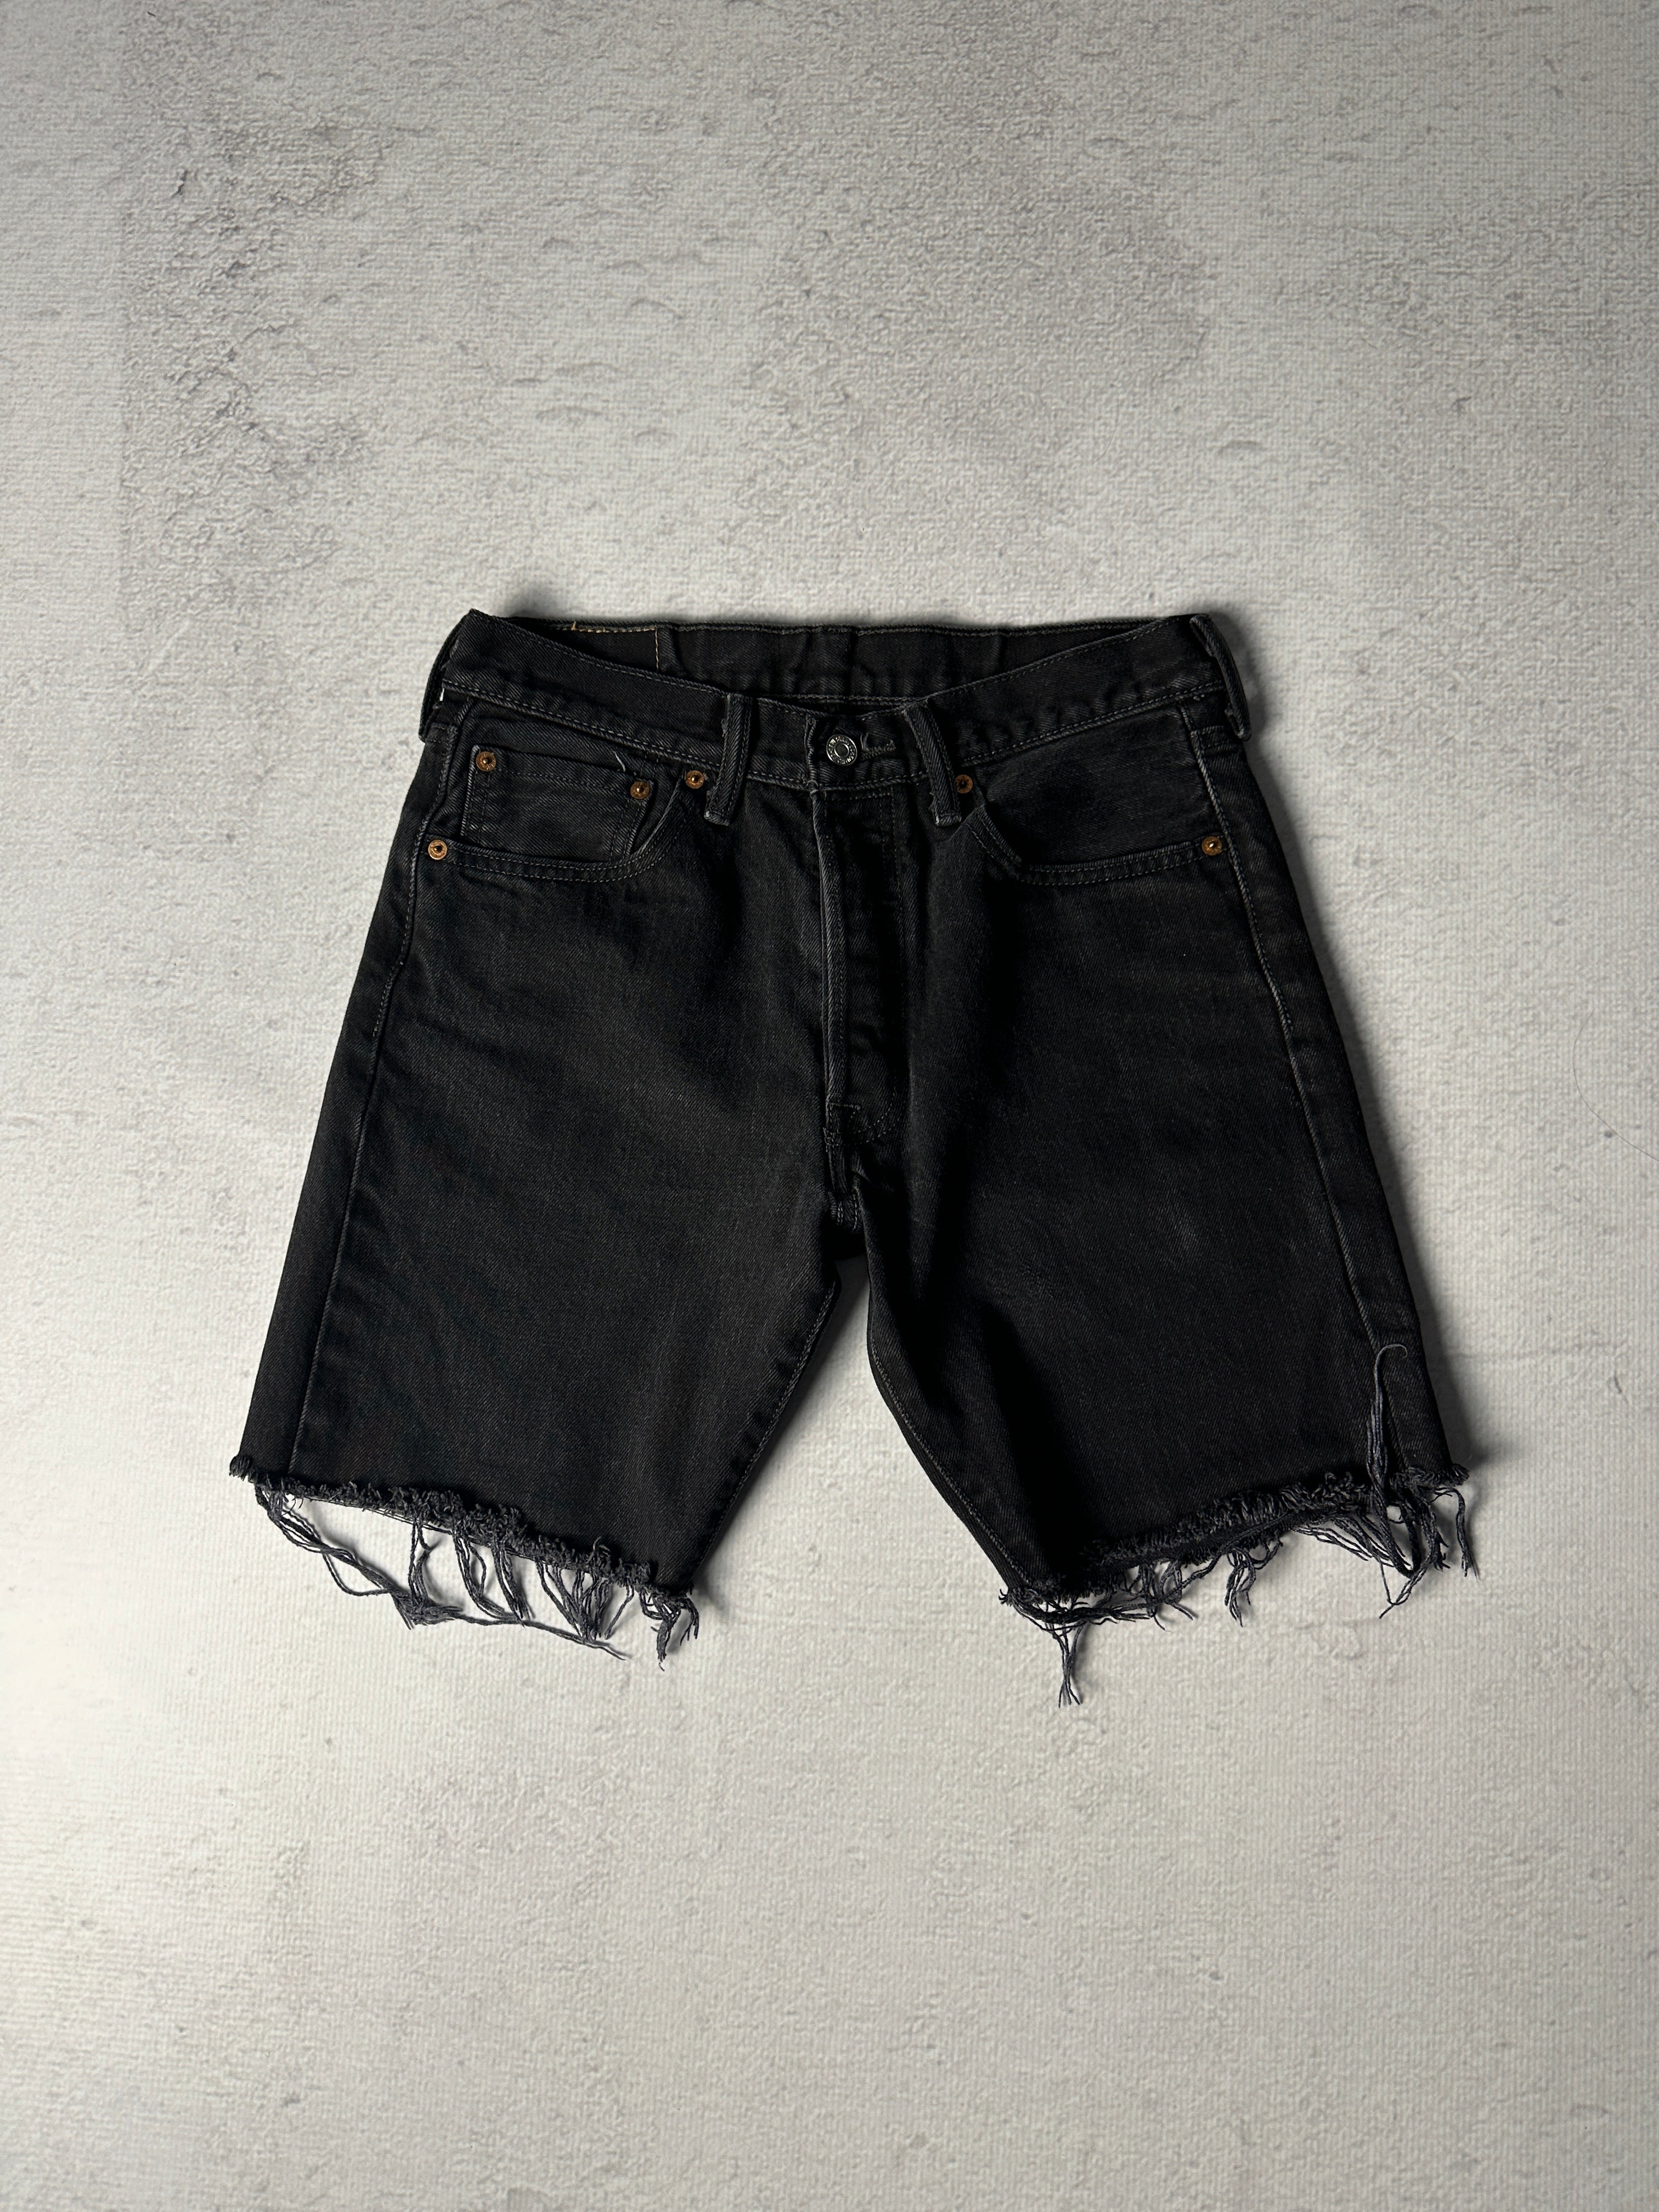 Vintage Levis 501 Jean Shorts - Men's 30W8L